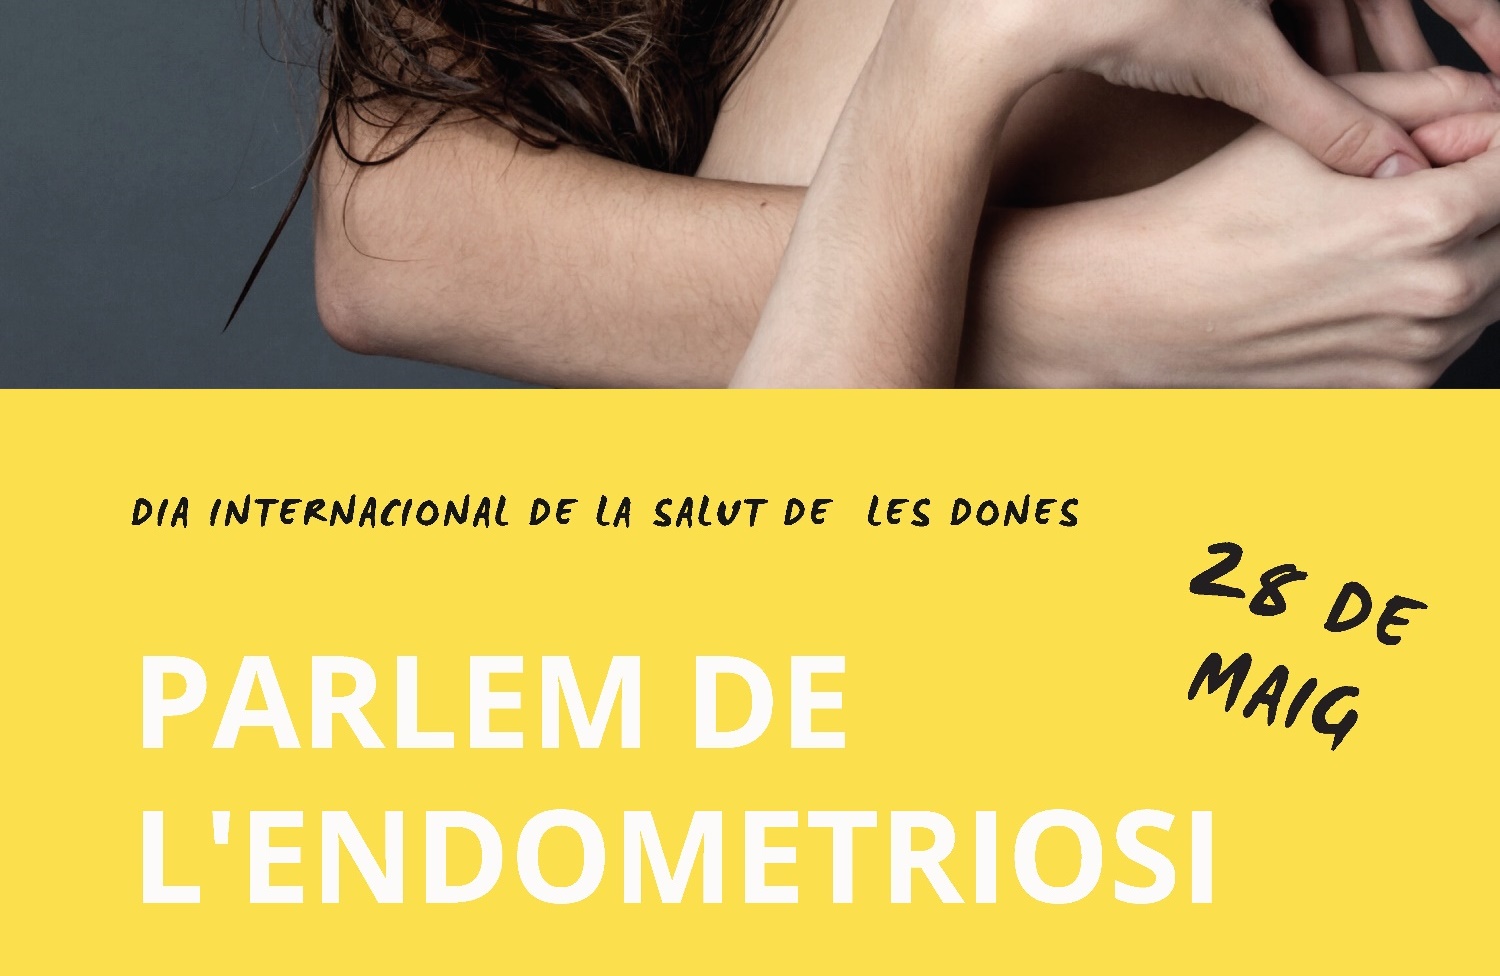 28 de maig, Dia Internacional de la Salut de les Dones: parlem de l'endometriosi